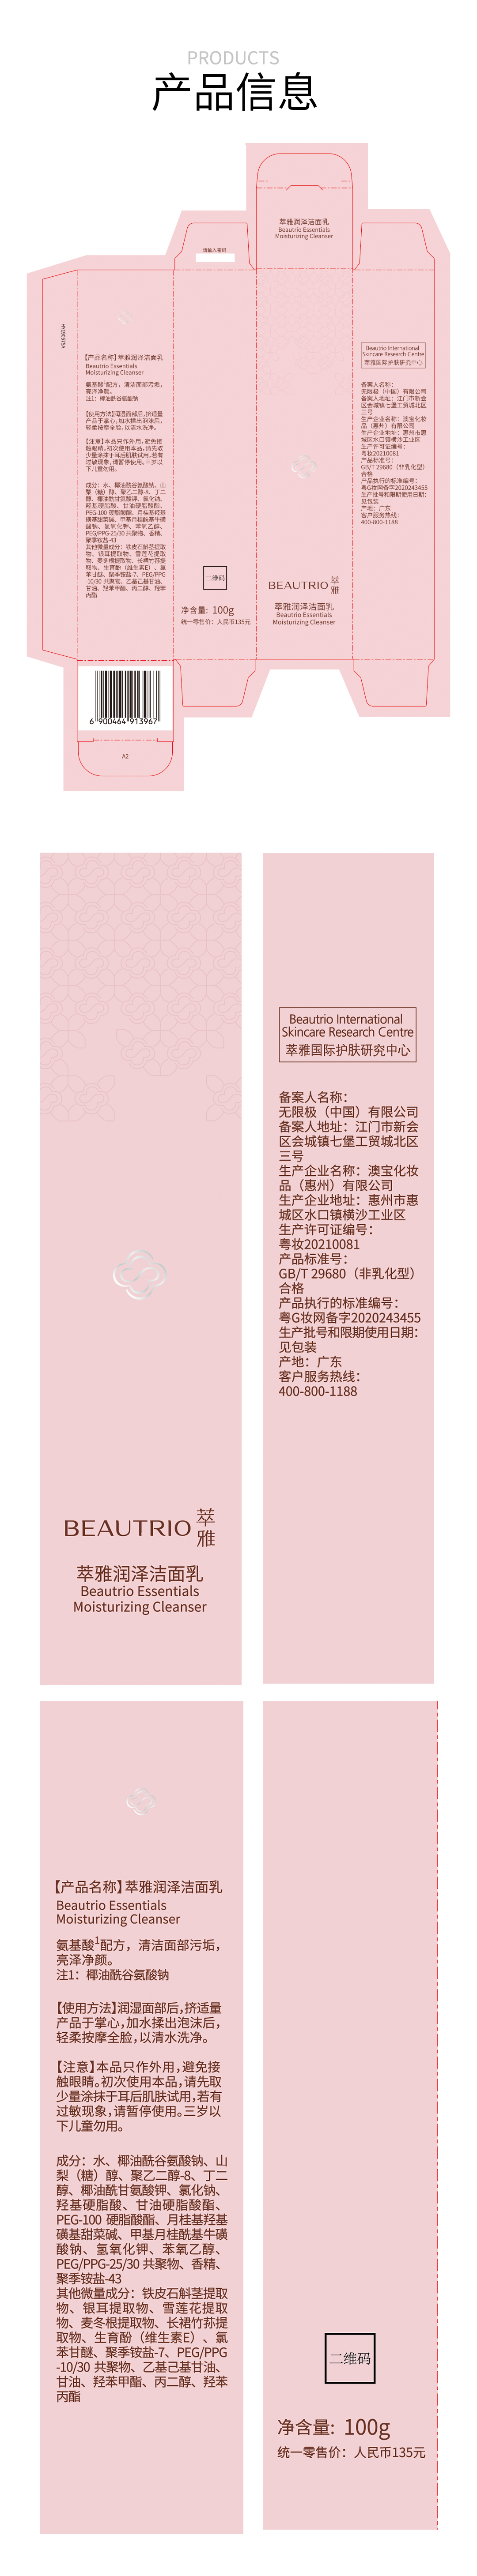 萃雅润泽洁面乳(2020版)18128-05-详情页_10.jpg